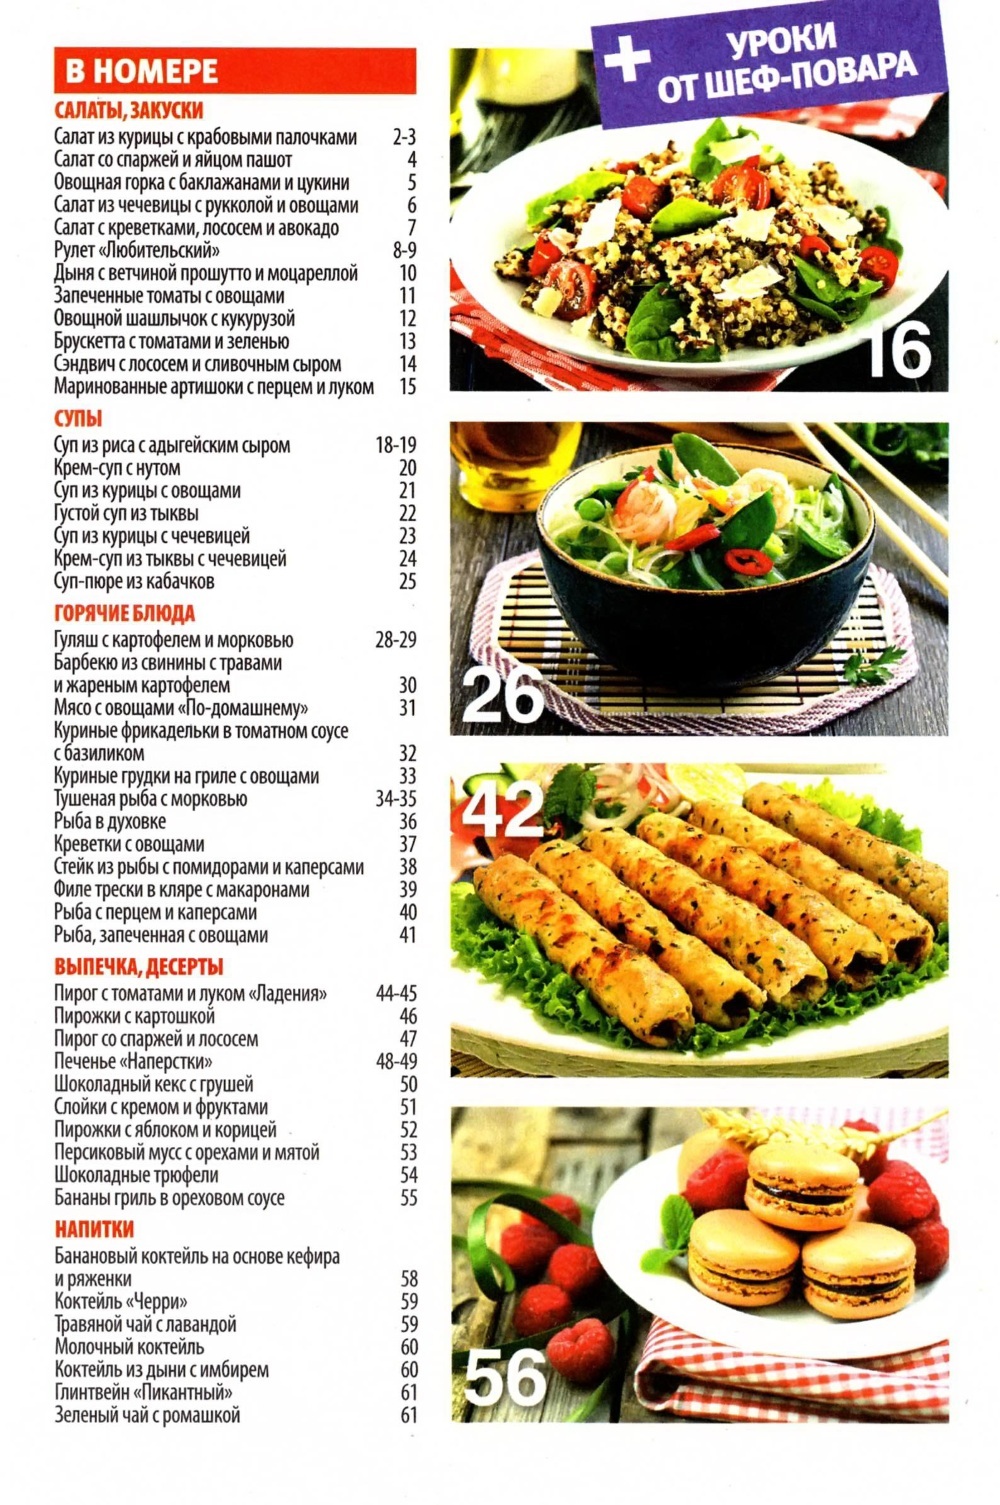 SHkola kulinara    16 2014 goda sod Любимый кулинарно информационный журнал «Школа кулинара №16 2014 года»